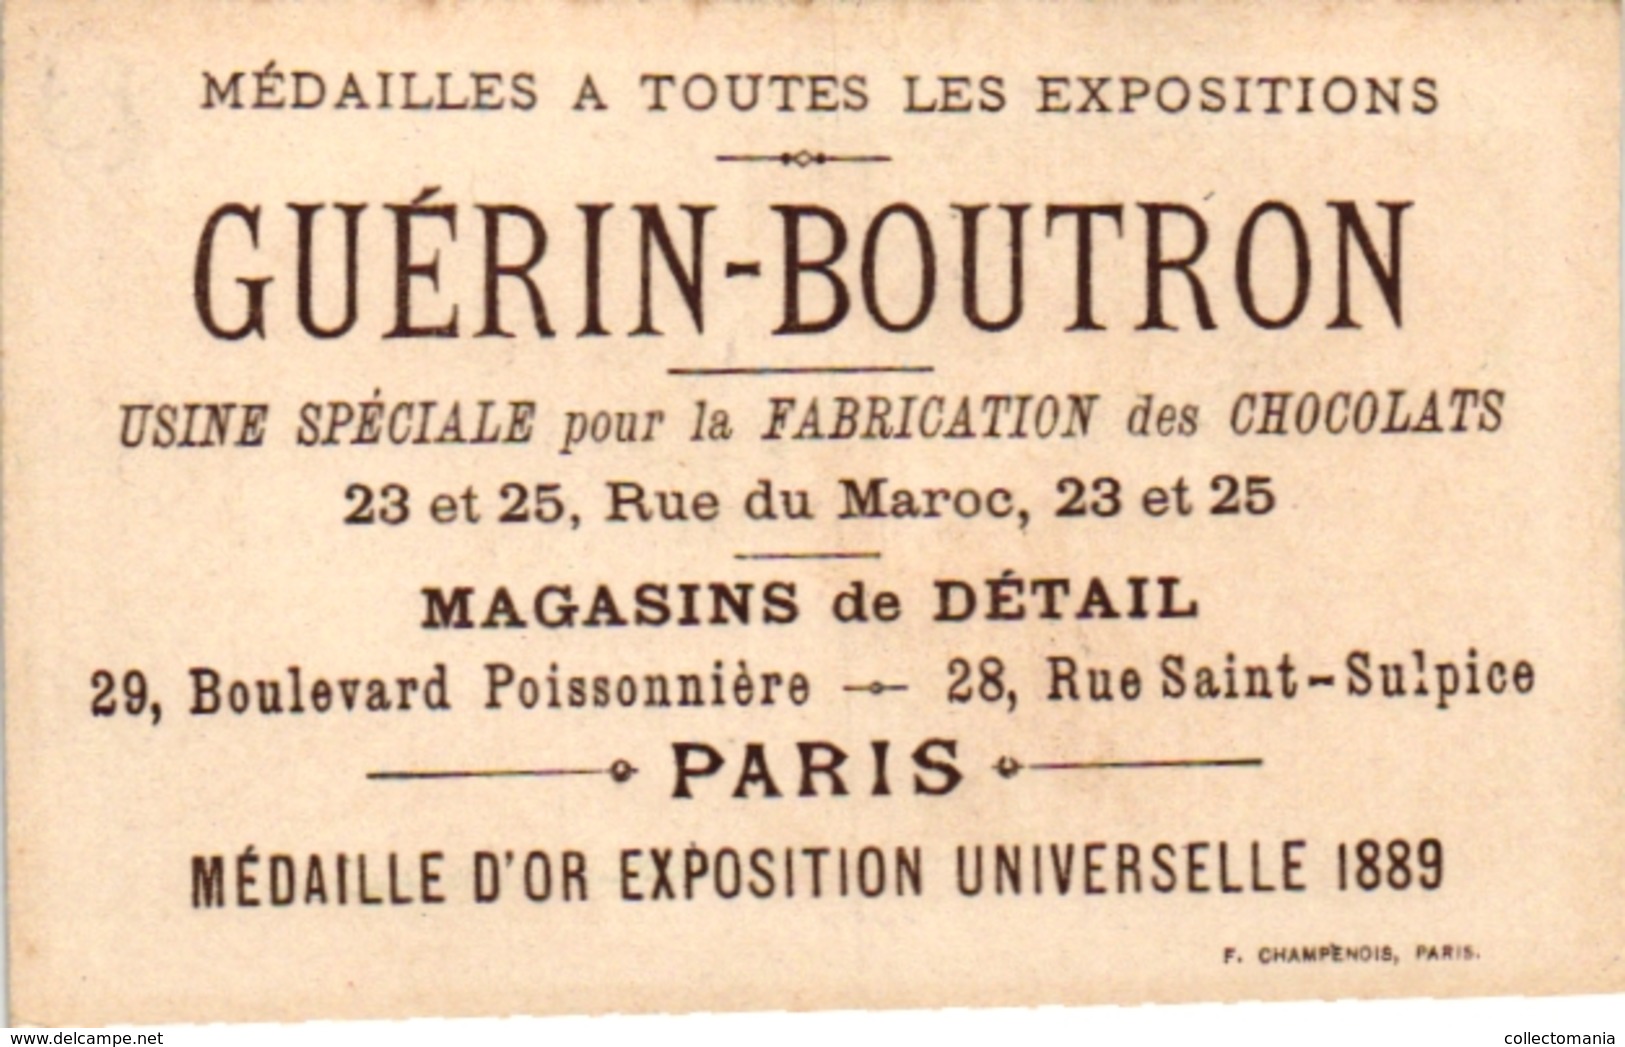 6 Cards c1900 PUB  Guérin Boutron Raverdy Chicorée Belle Jardinière   Play at Marbles Jouer aux Billes Murmeln